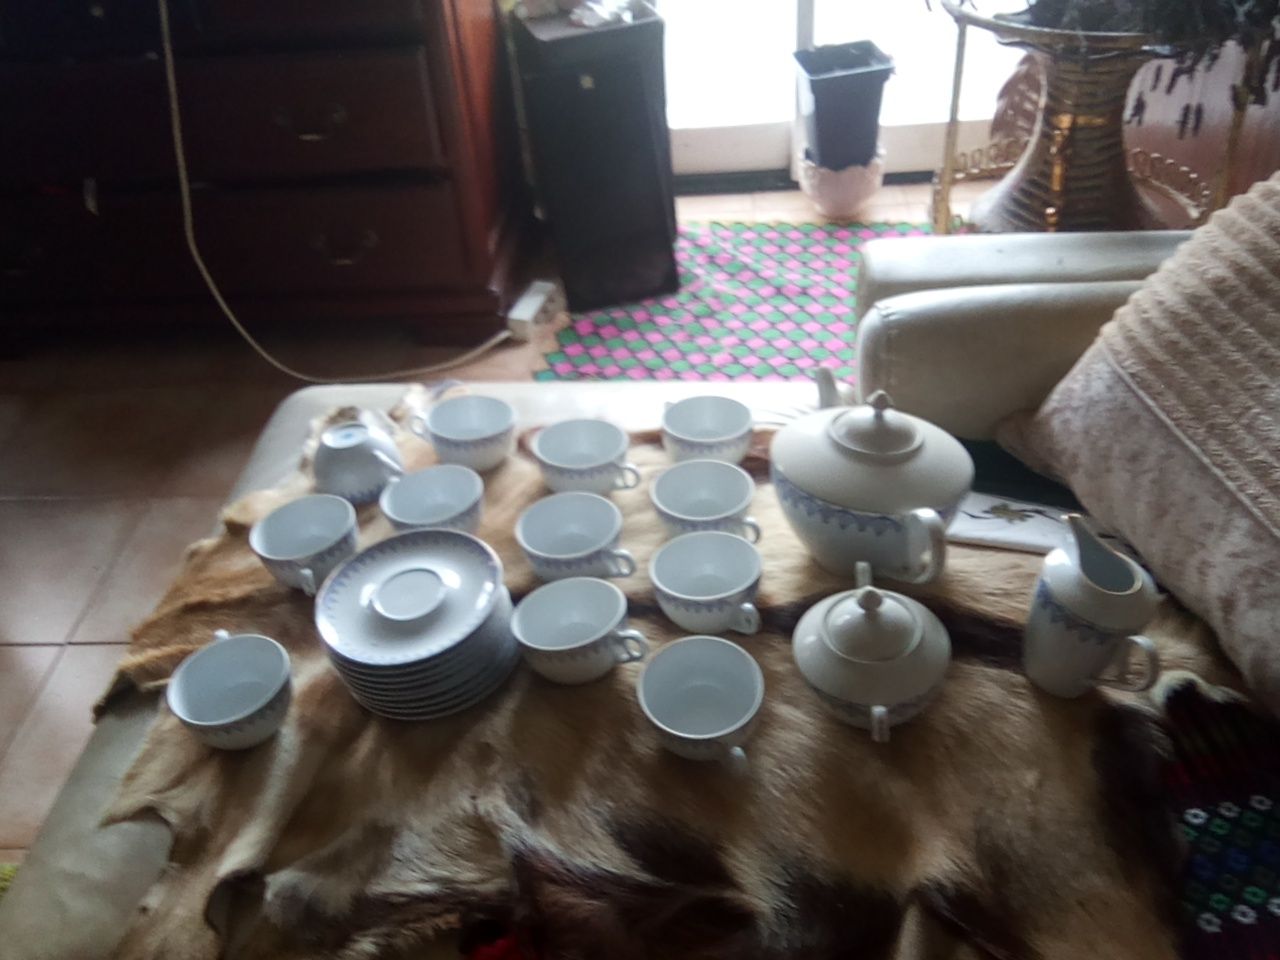 Serviço de chá para 12 pessoas,porcelana PB